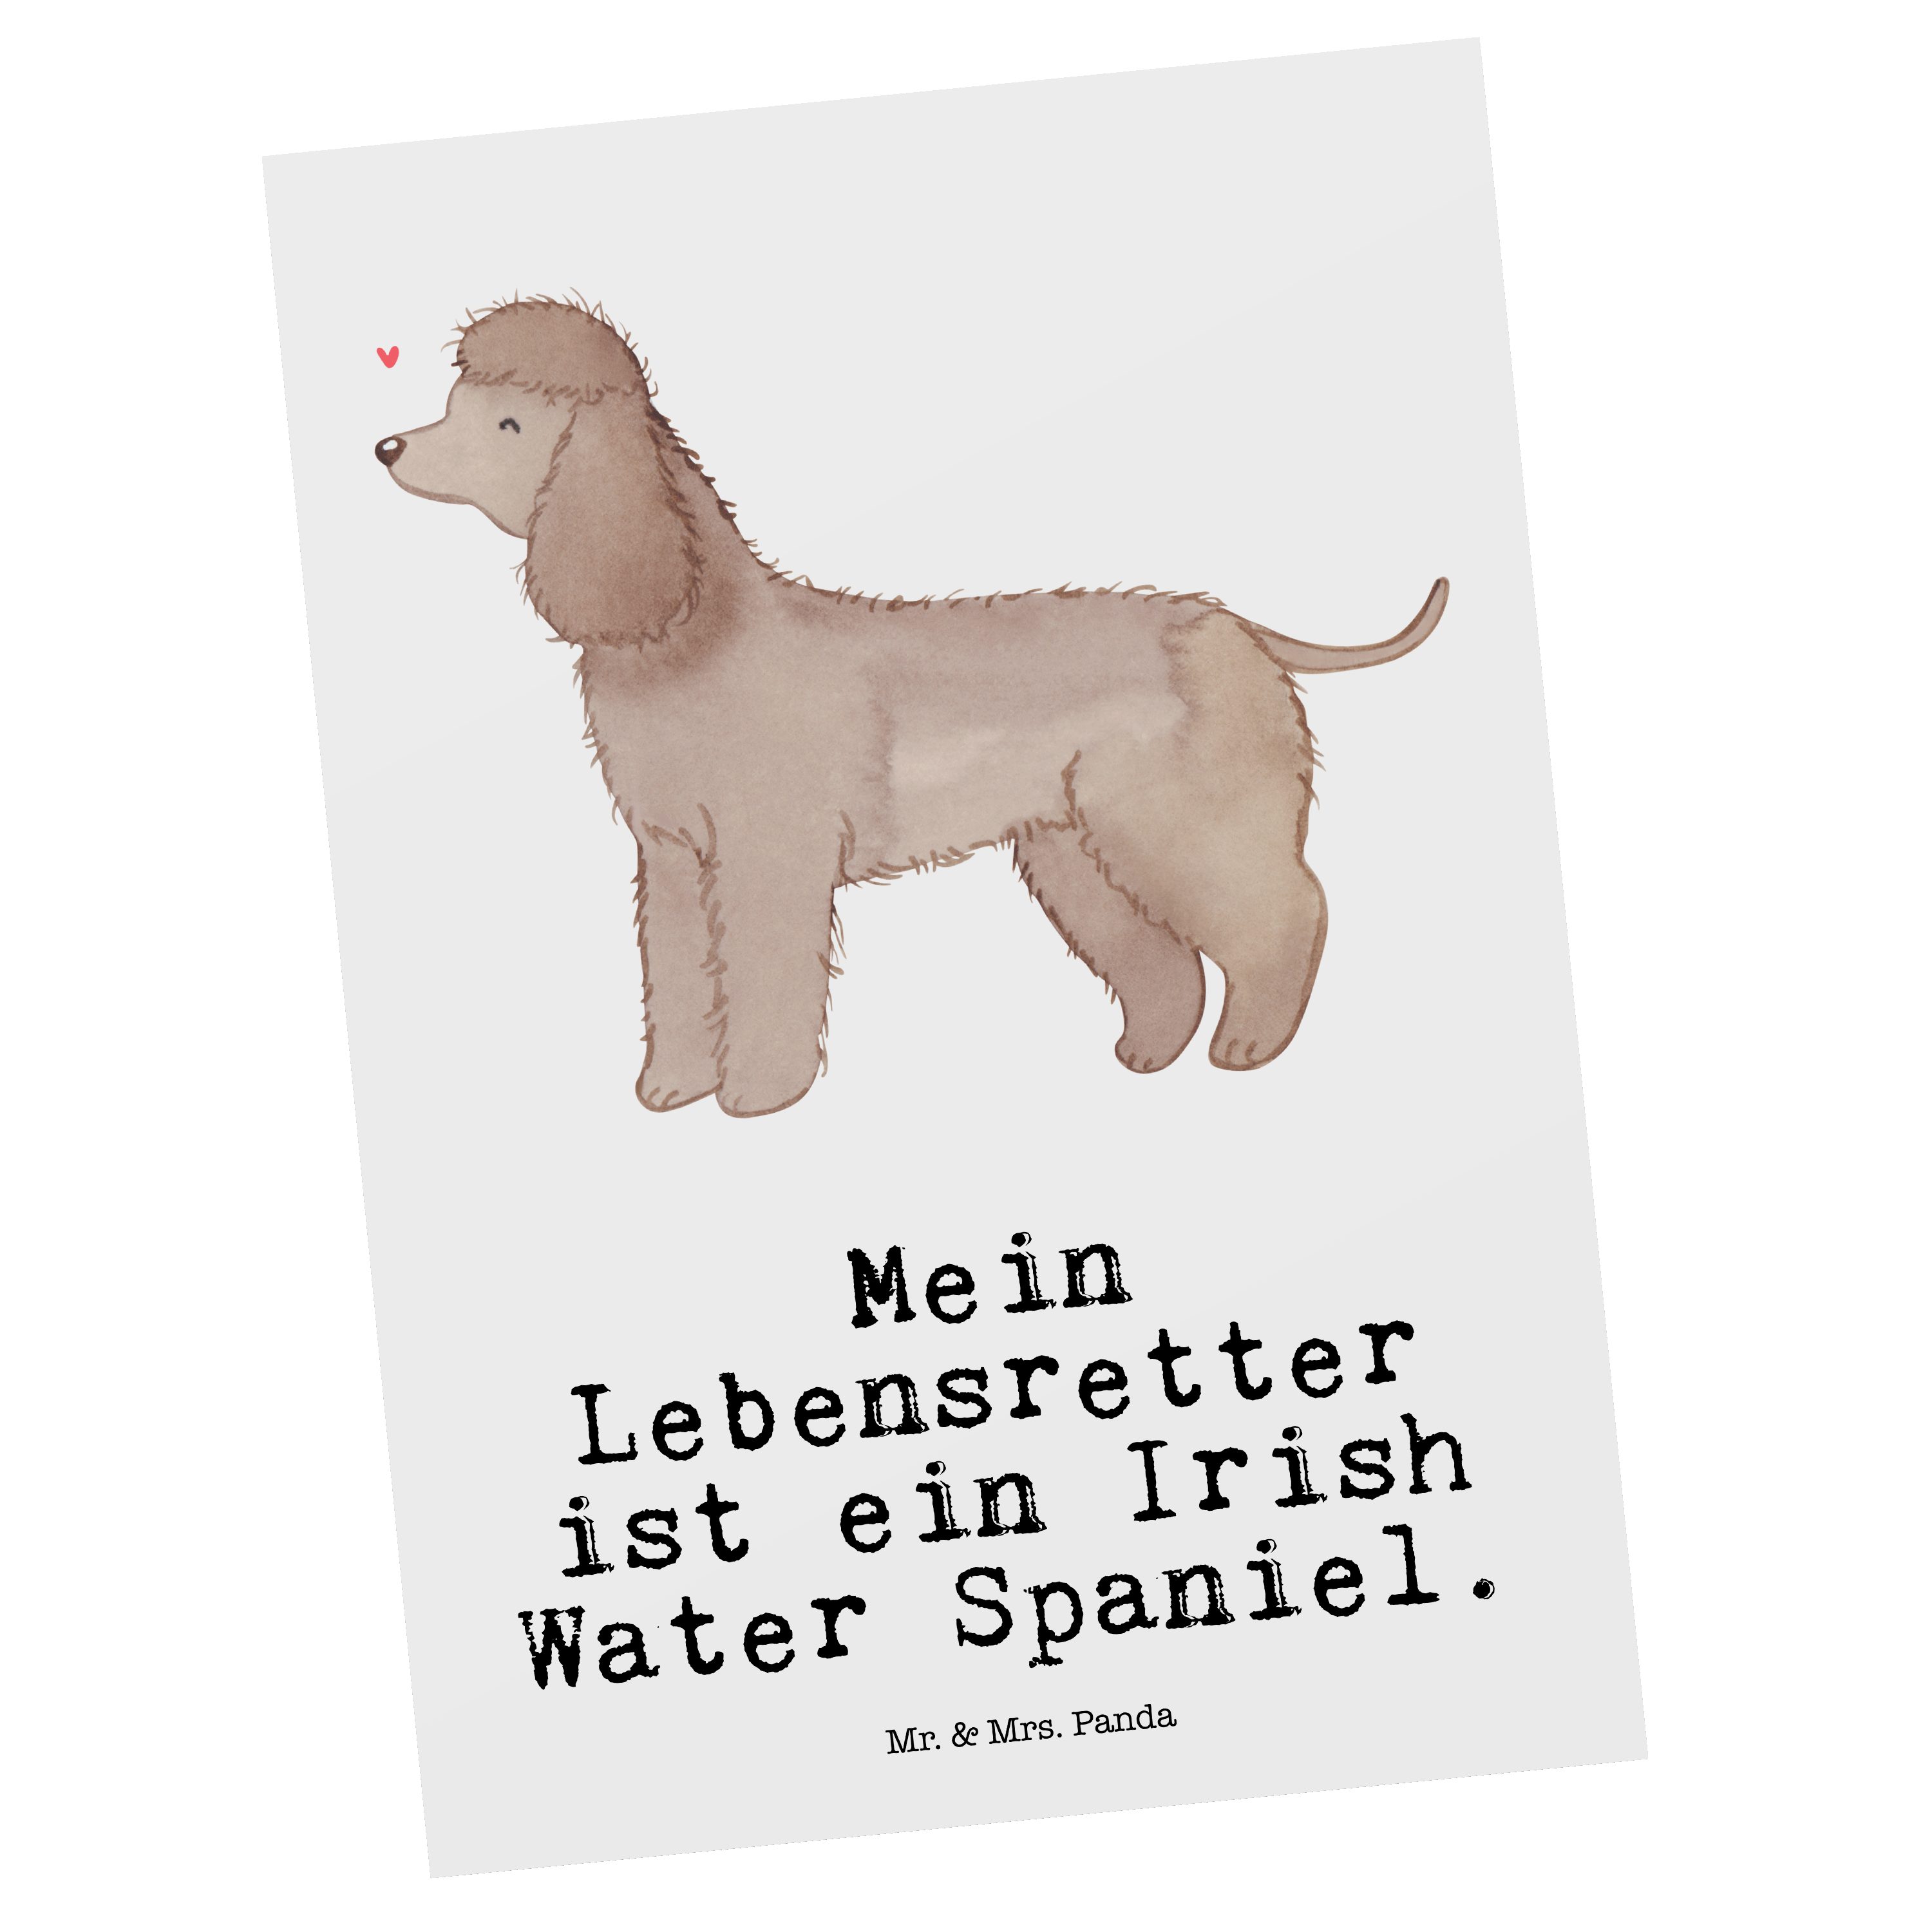 Mr. & Mrs. Panda Postkarte Irish Water Spaniel Lebensretter - Weiß - Geschenk, Geburtstagskarte